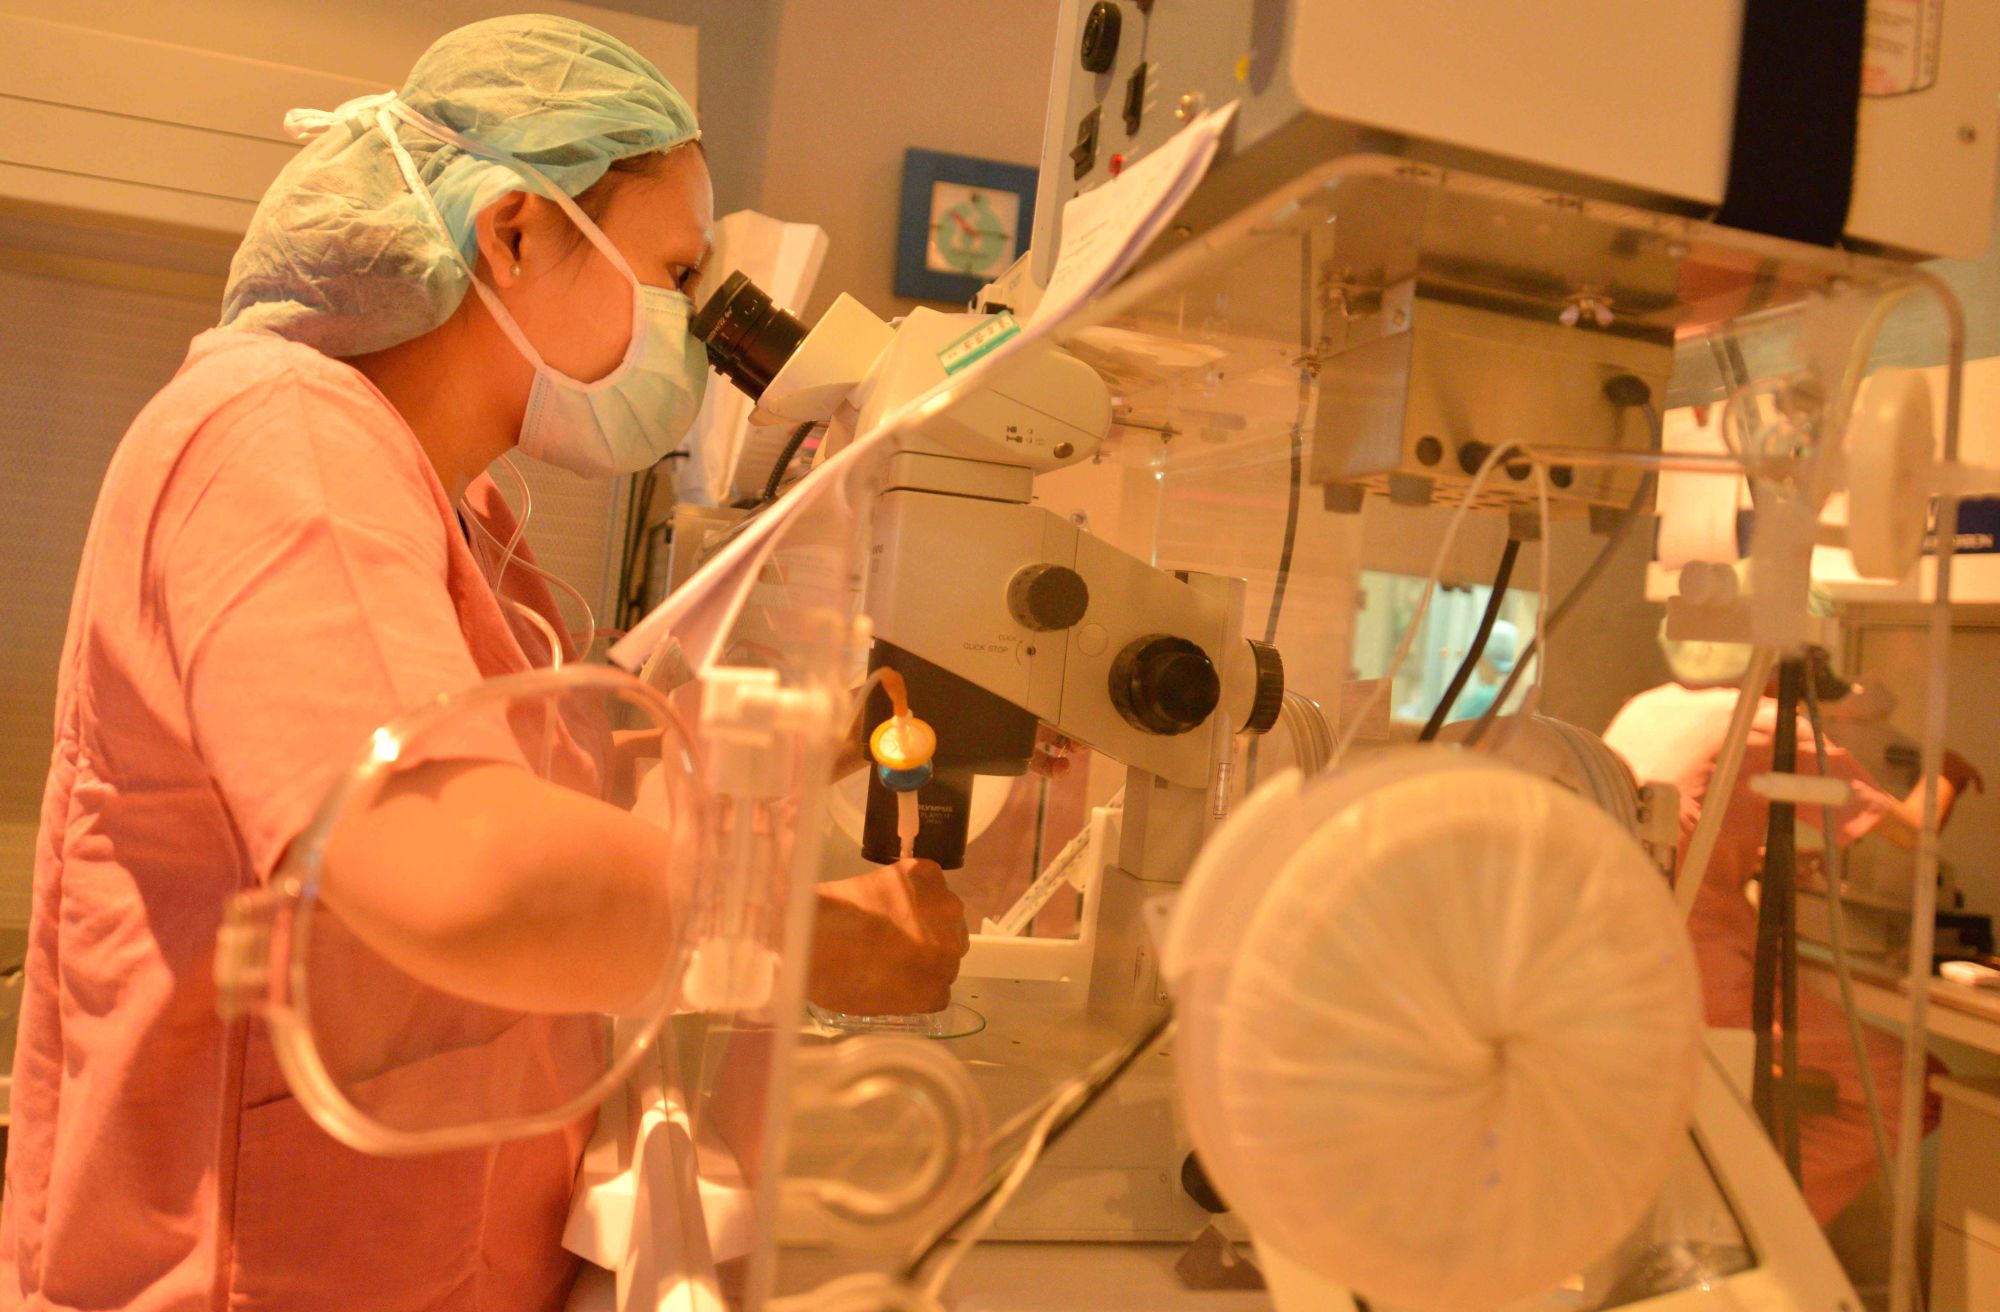 Phôi của các cặp vợ chồng hiếm muộn được bảo quản lạnh tại Bệnh viện Từ Dũ Thành phố Hồ Chí Minh. (Ảnh: Phương Vy/TTXVN)